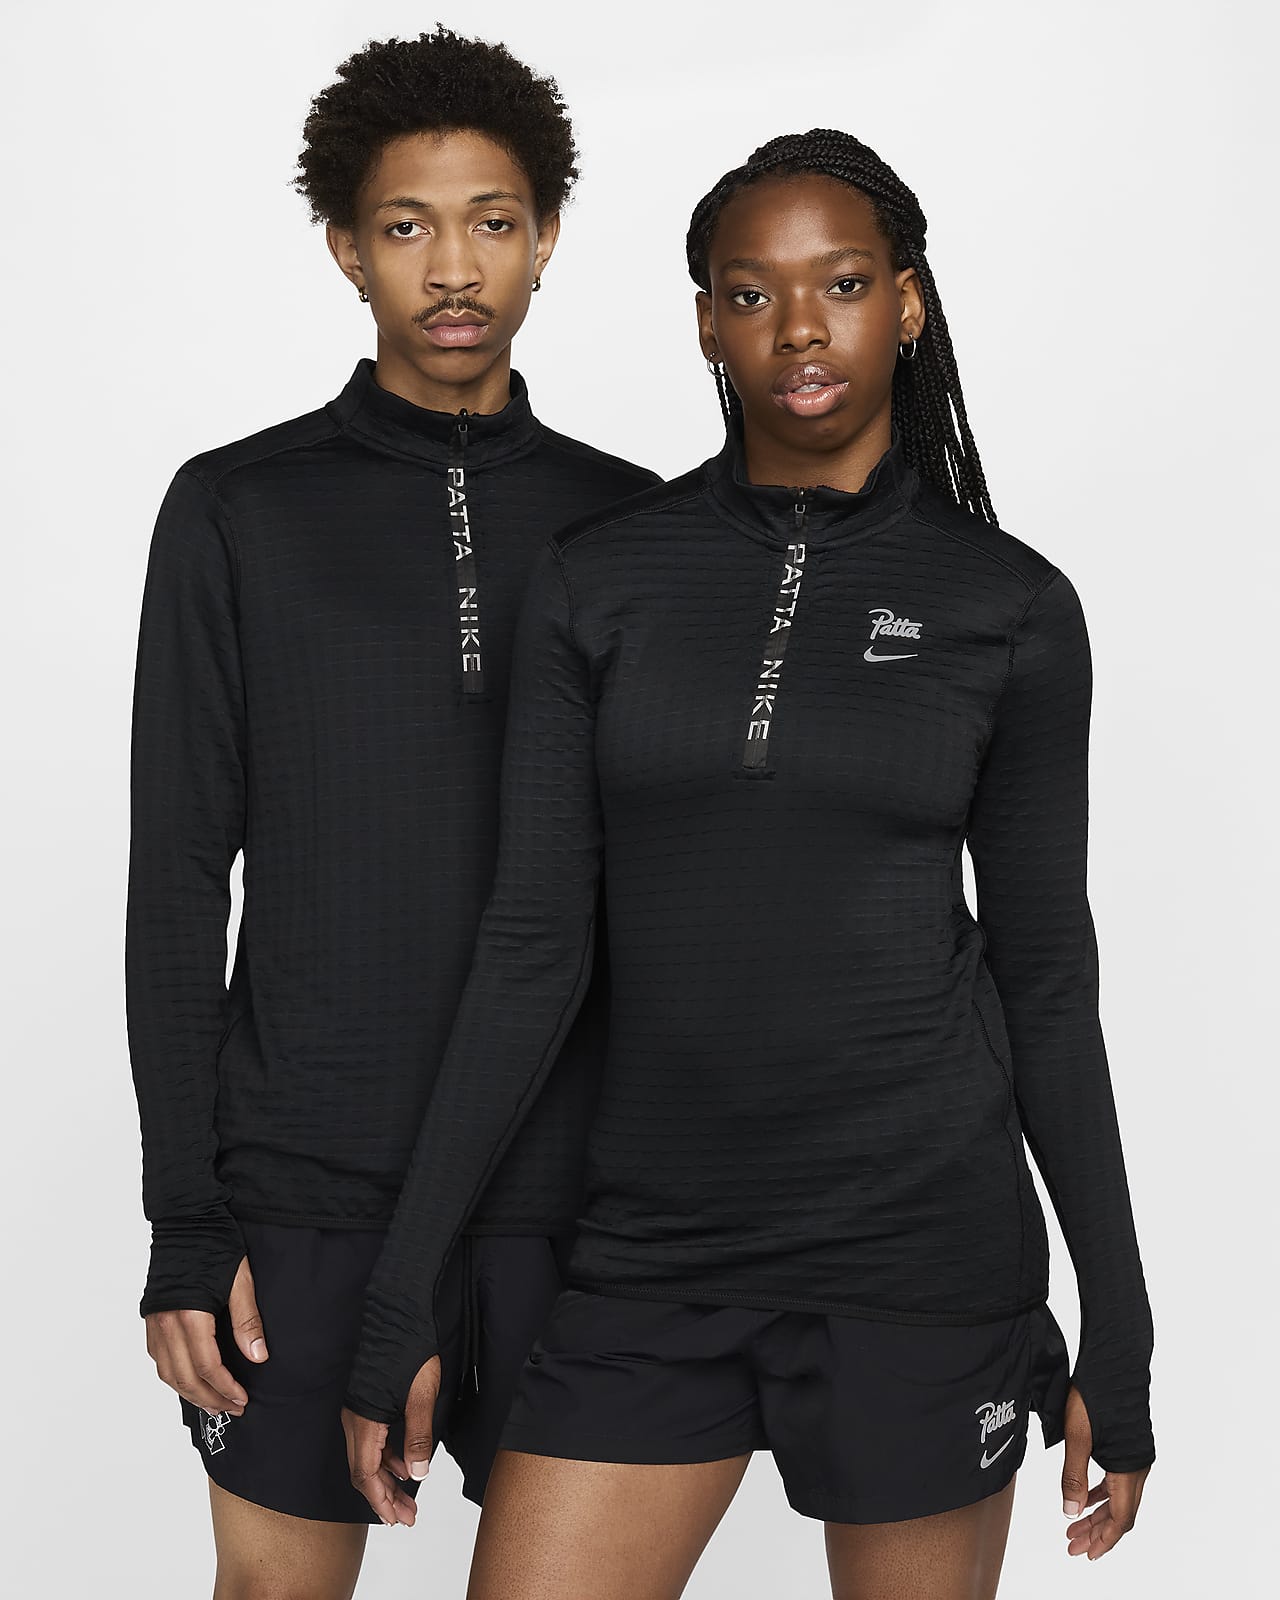 Tričko Nike x Patta Running Team s dlouhým rukávem a polovičním zipem